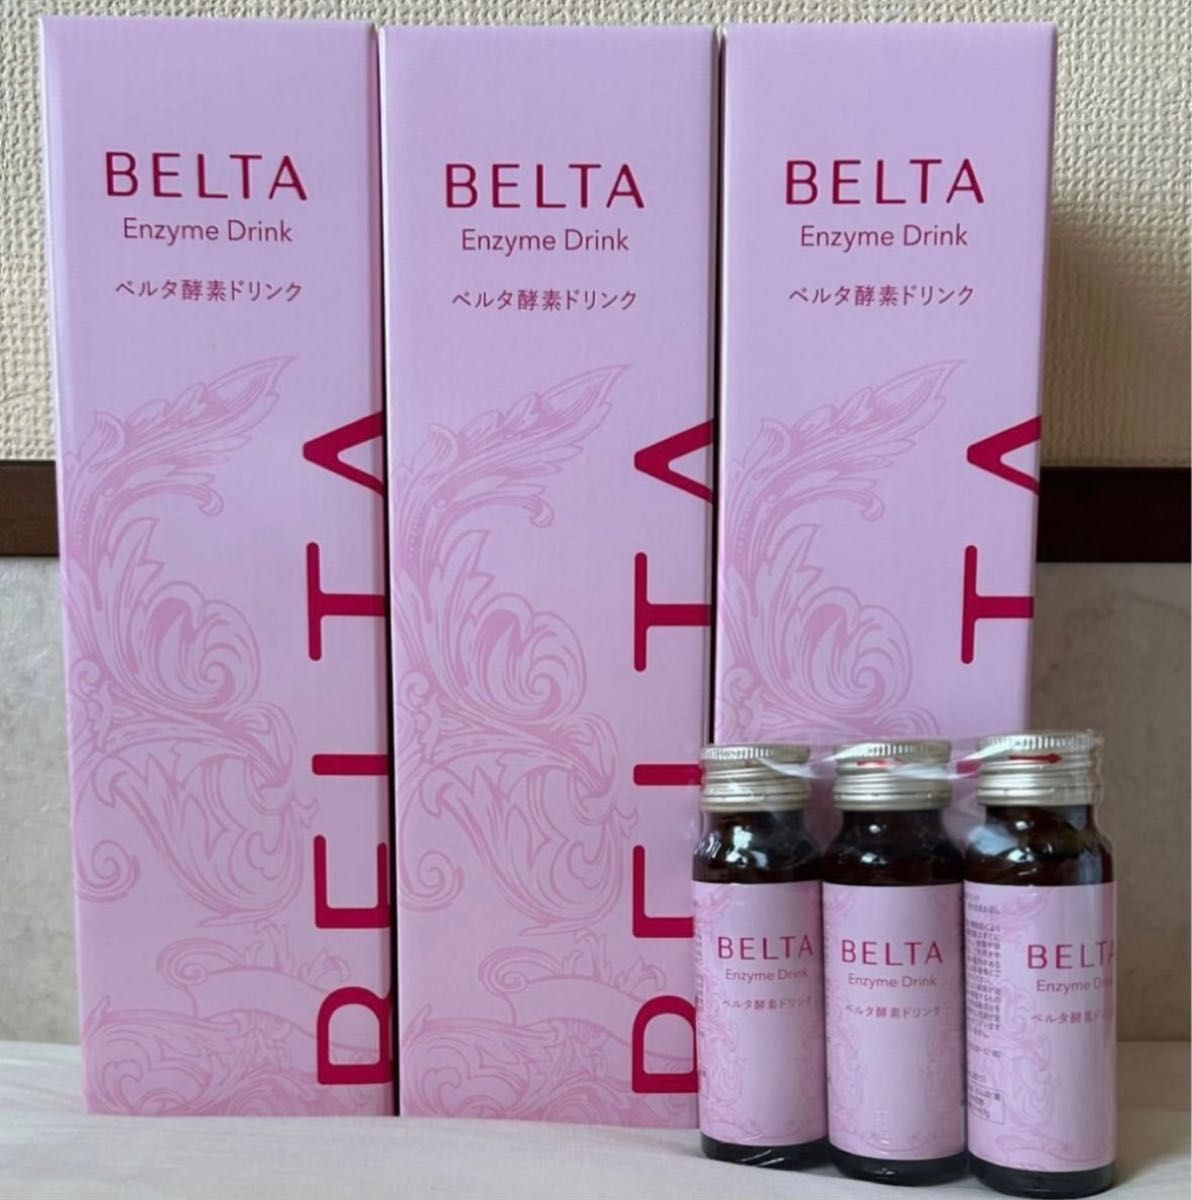 新品爆買い BELTA ベルタ酵素ドリンク 2本セット ピーチ味